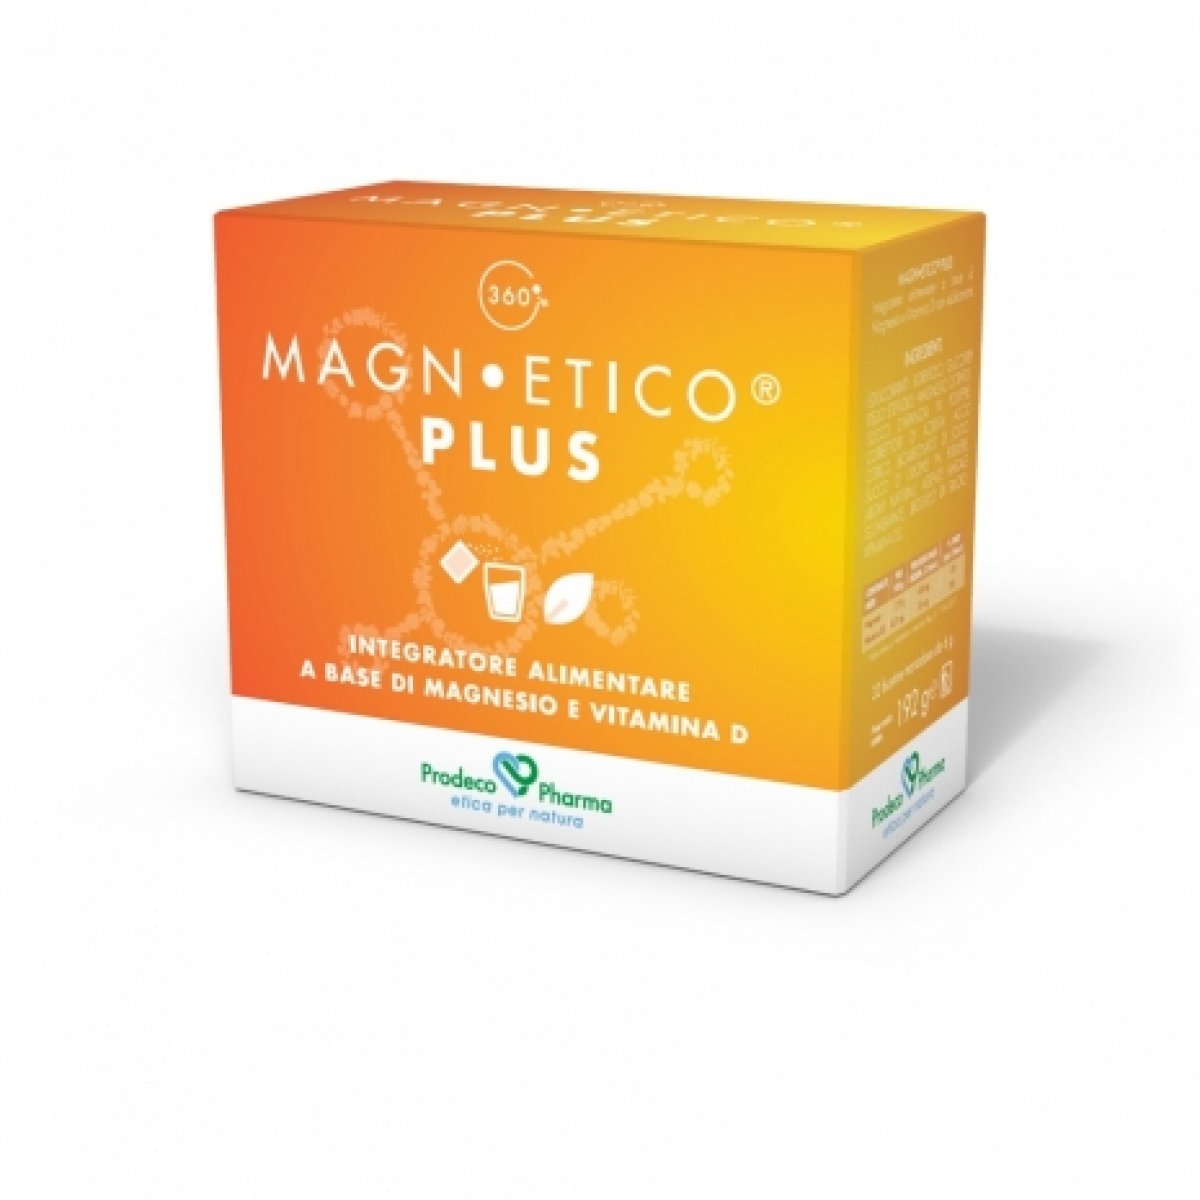 MAGNETICO® 360 PLUS - Magnesio e Vitamina D - Prodeco Pharma MAGN•ETICO® è un integratore alimentare a base di Magnesio e Vitamina D3 che aiutano a mantenere ossa e denti sani e la normale funzione muscolare. Confezione da 32 bustine monodose da 6 g ciascuna